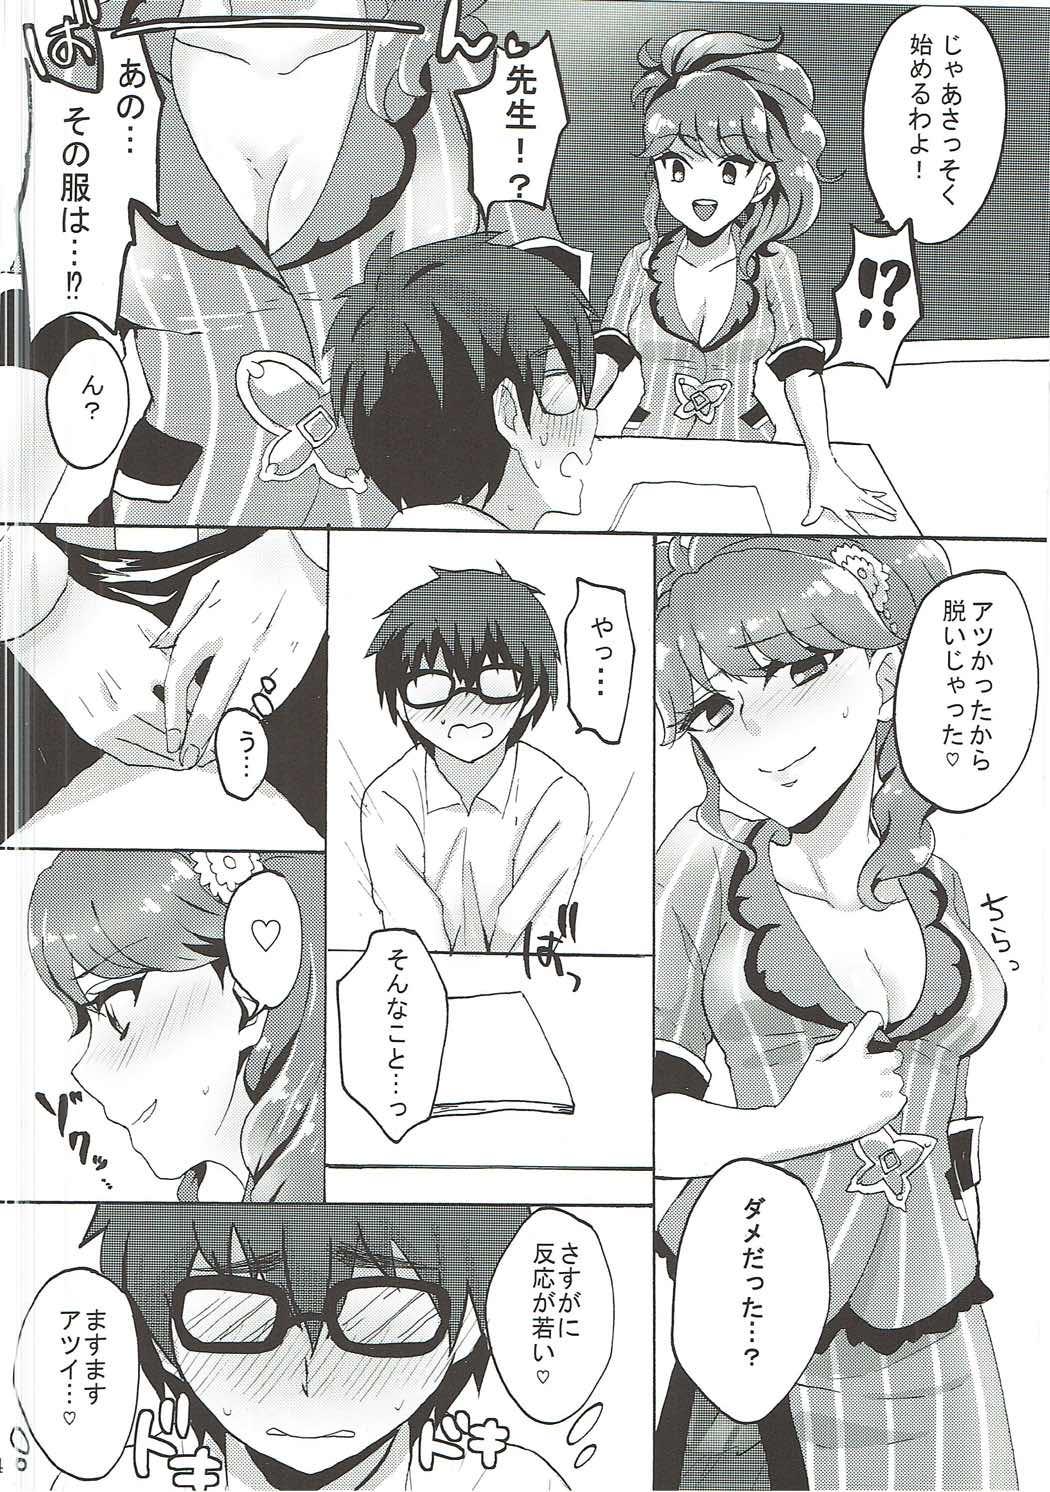 Orgy Oshiete! Aikatsu Sensei - Aikatsu Caliente - Page 5